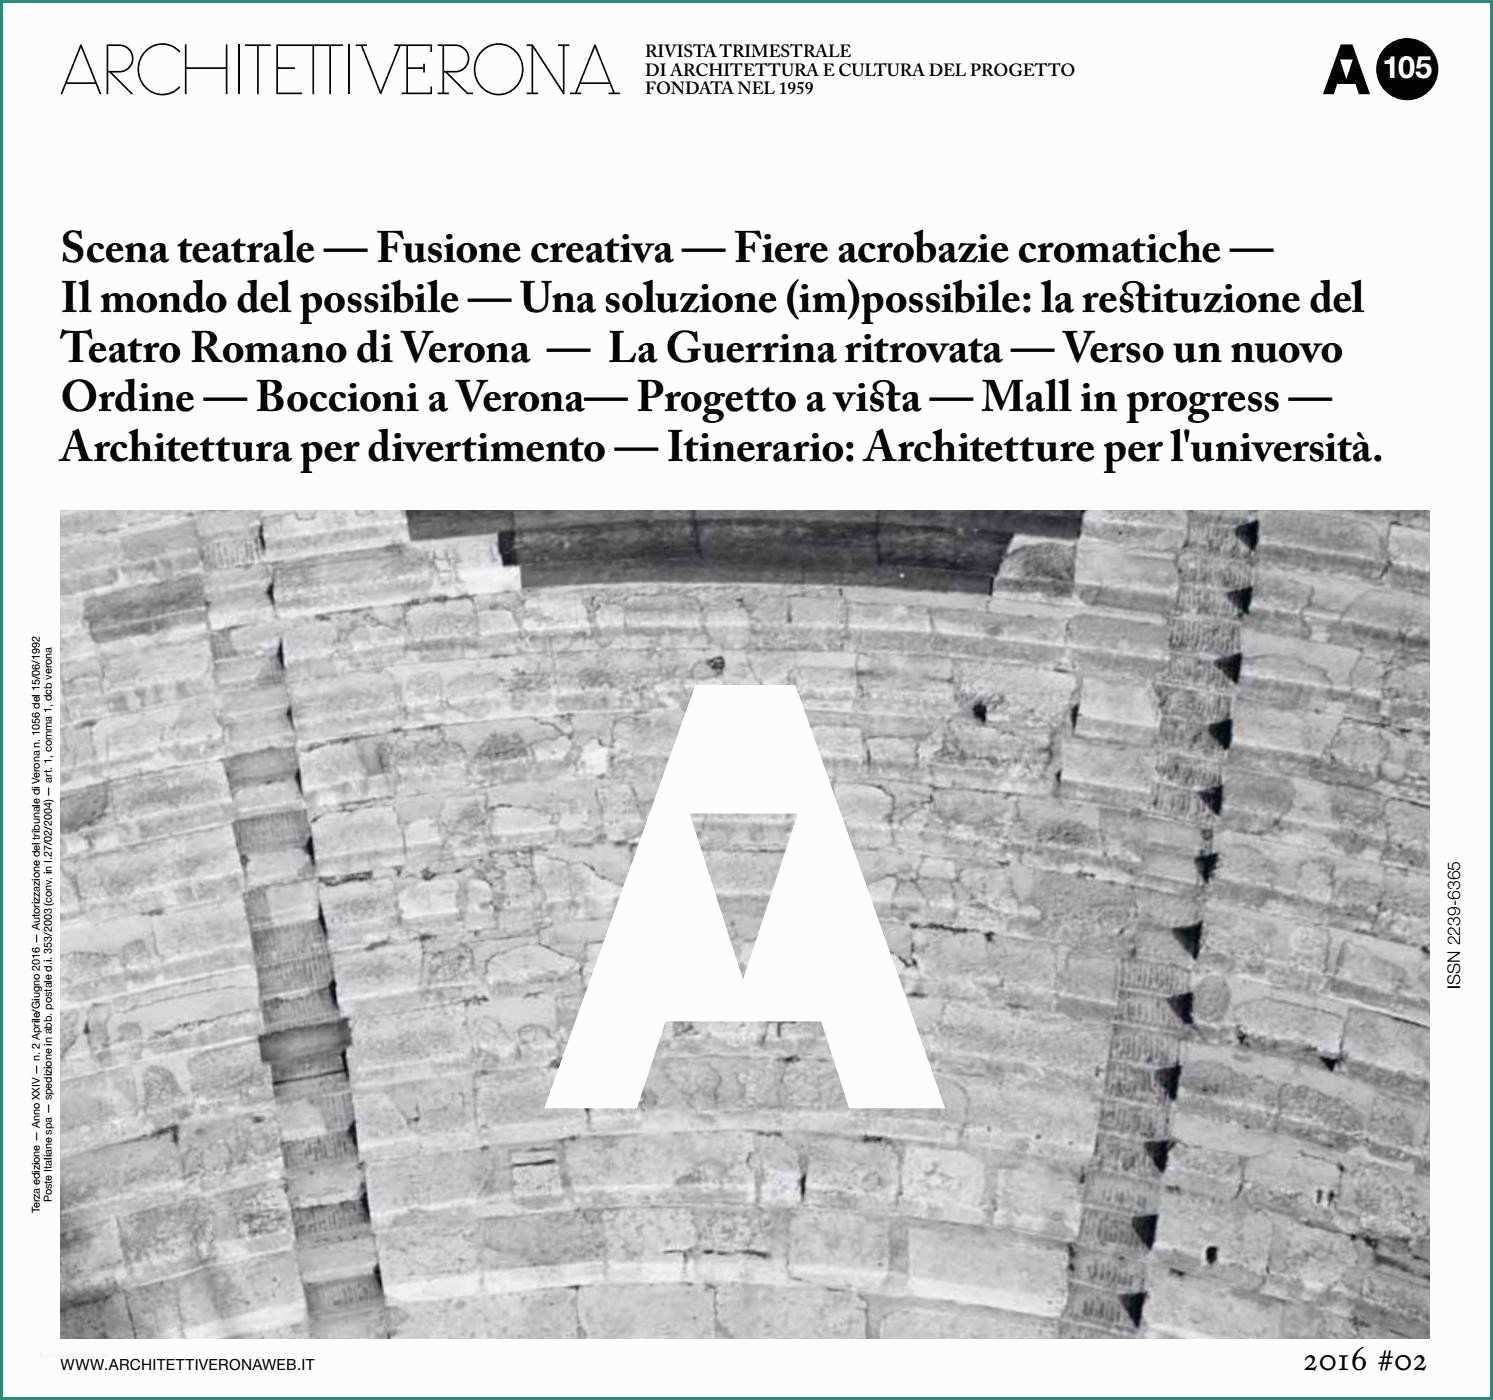 Pannelli In Cemento Per Recinzioni E Pannelli forati Per Recinzioni Architettiverona 105 by